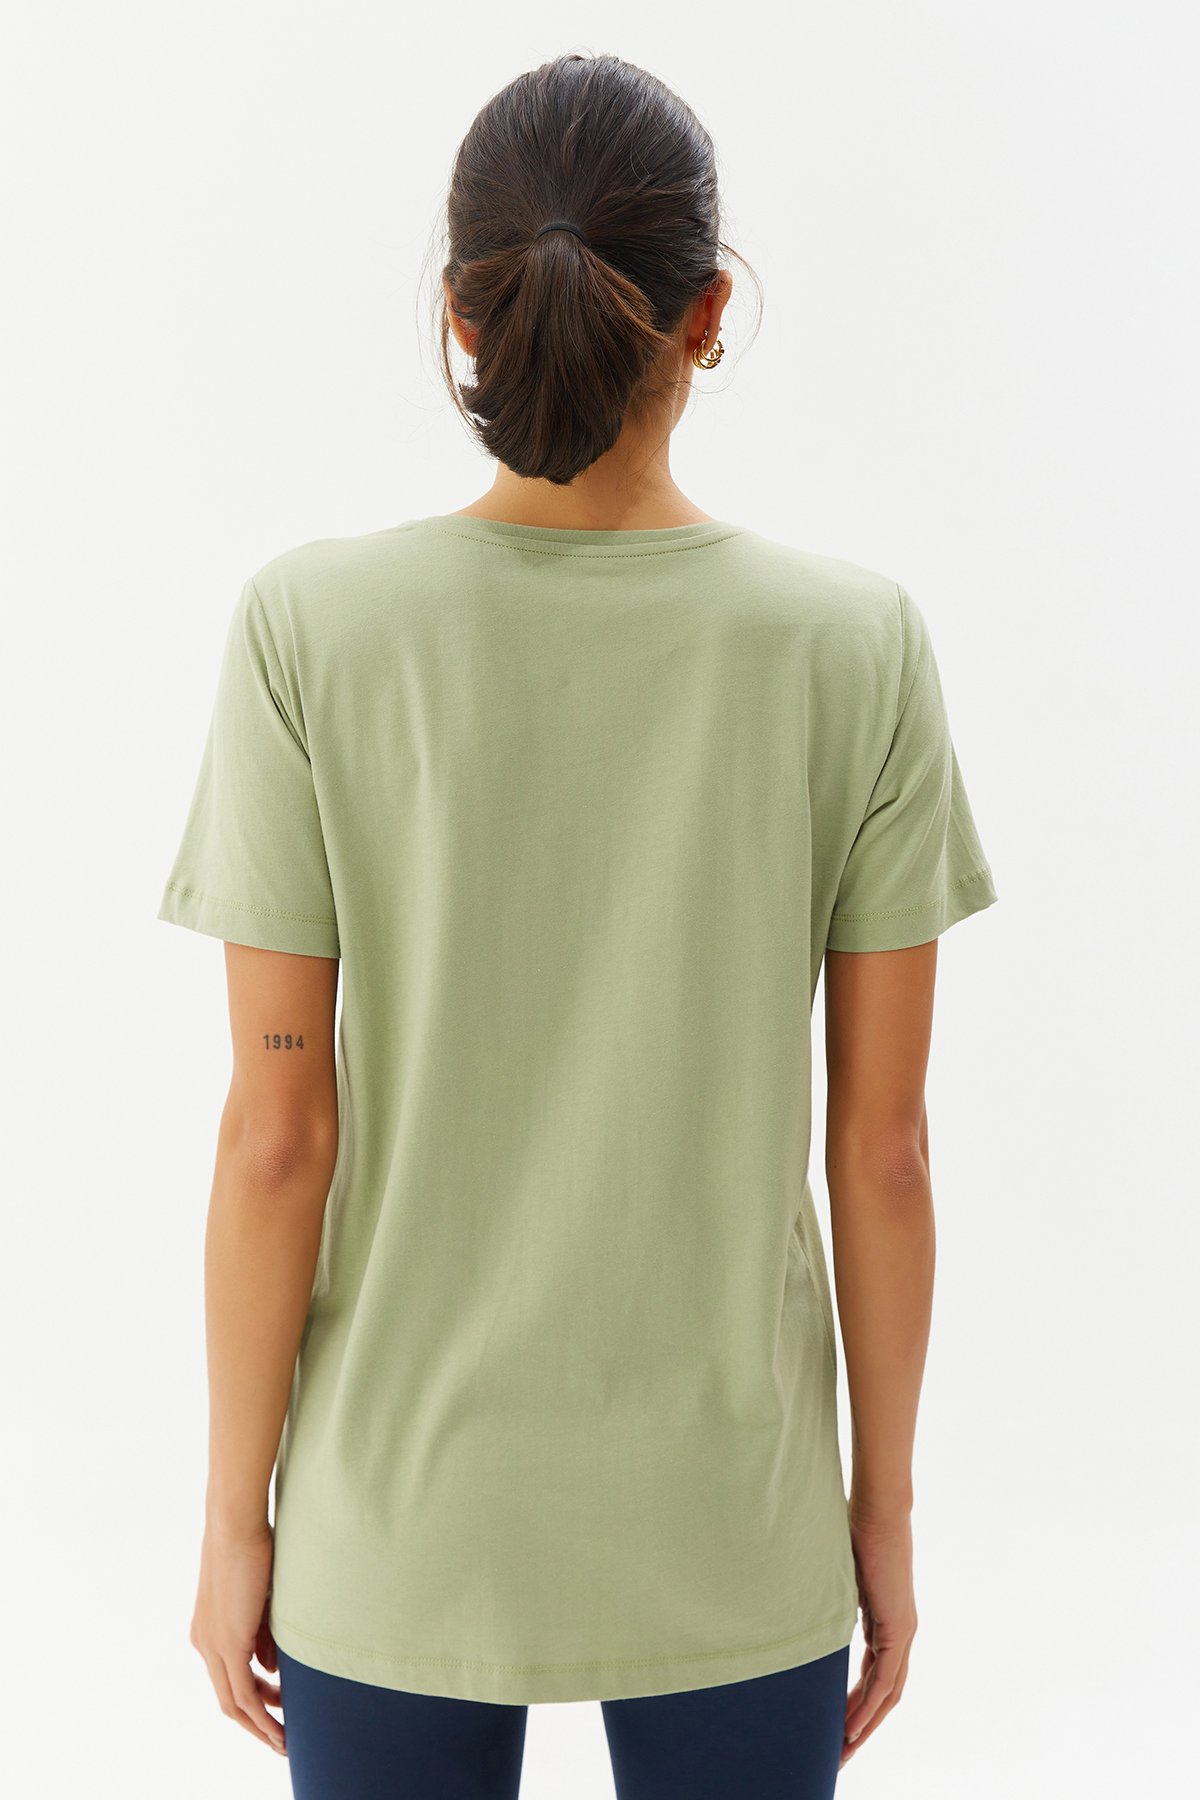 Kadın Yeşil Basıc Kısa Kol Tişört 9242 - 5